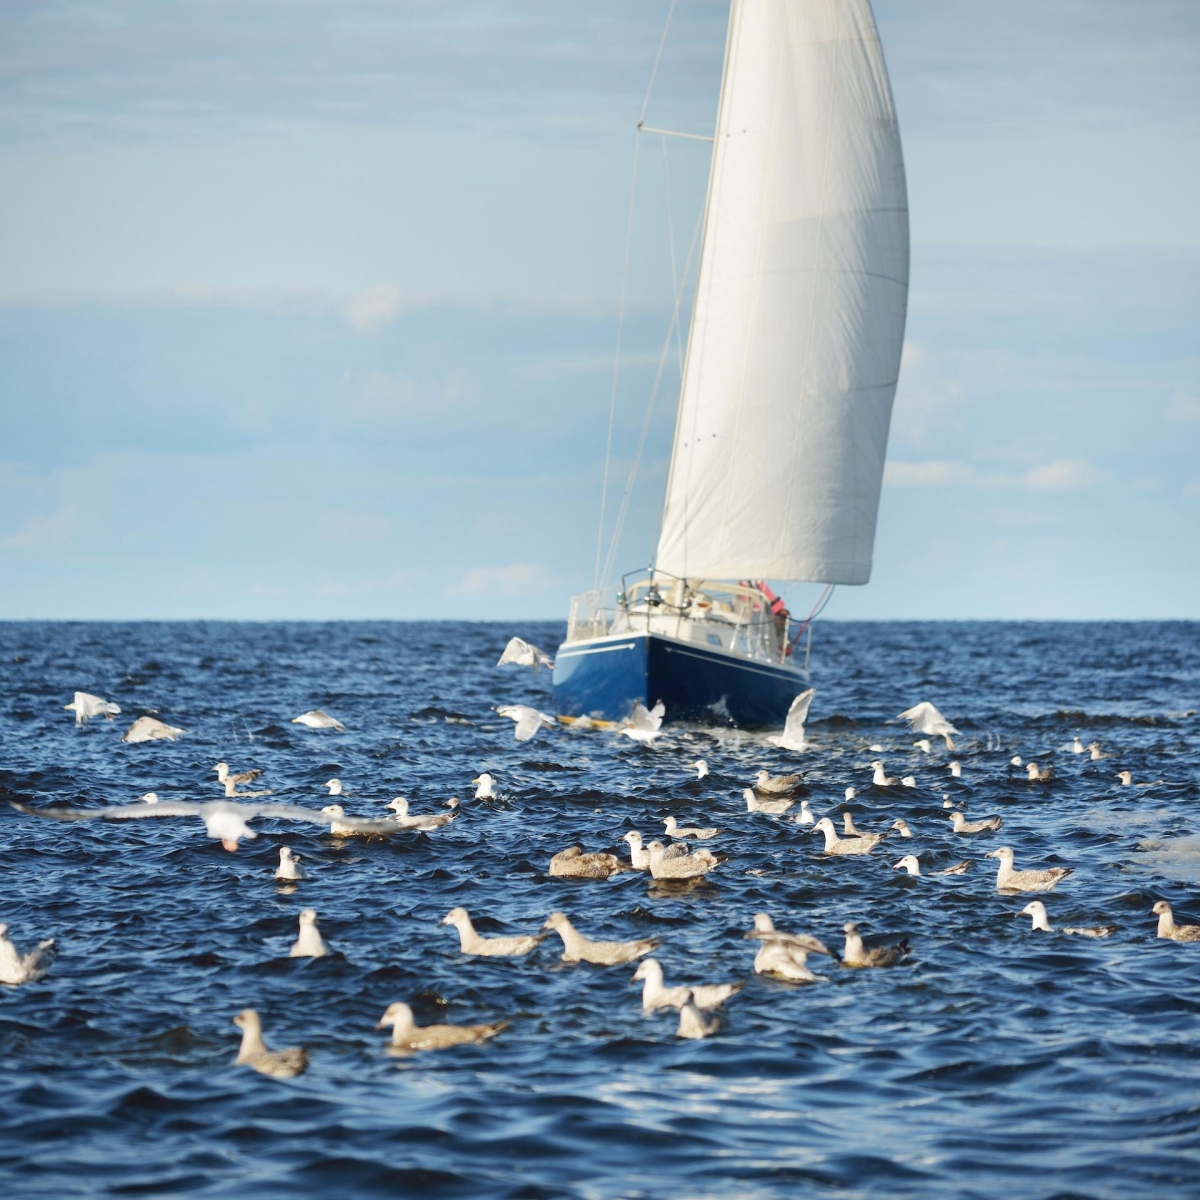 Blaue Jacht mit Schaluppe segelt an einem klaren Tag in der offenen Ostsee, fliegende Möwen aus nächster Nähe.  Bucht von Riga, Lettland